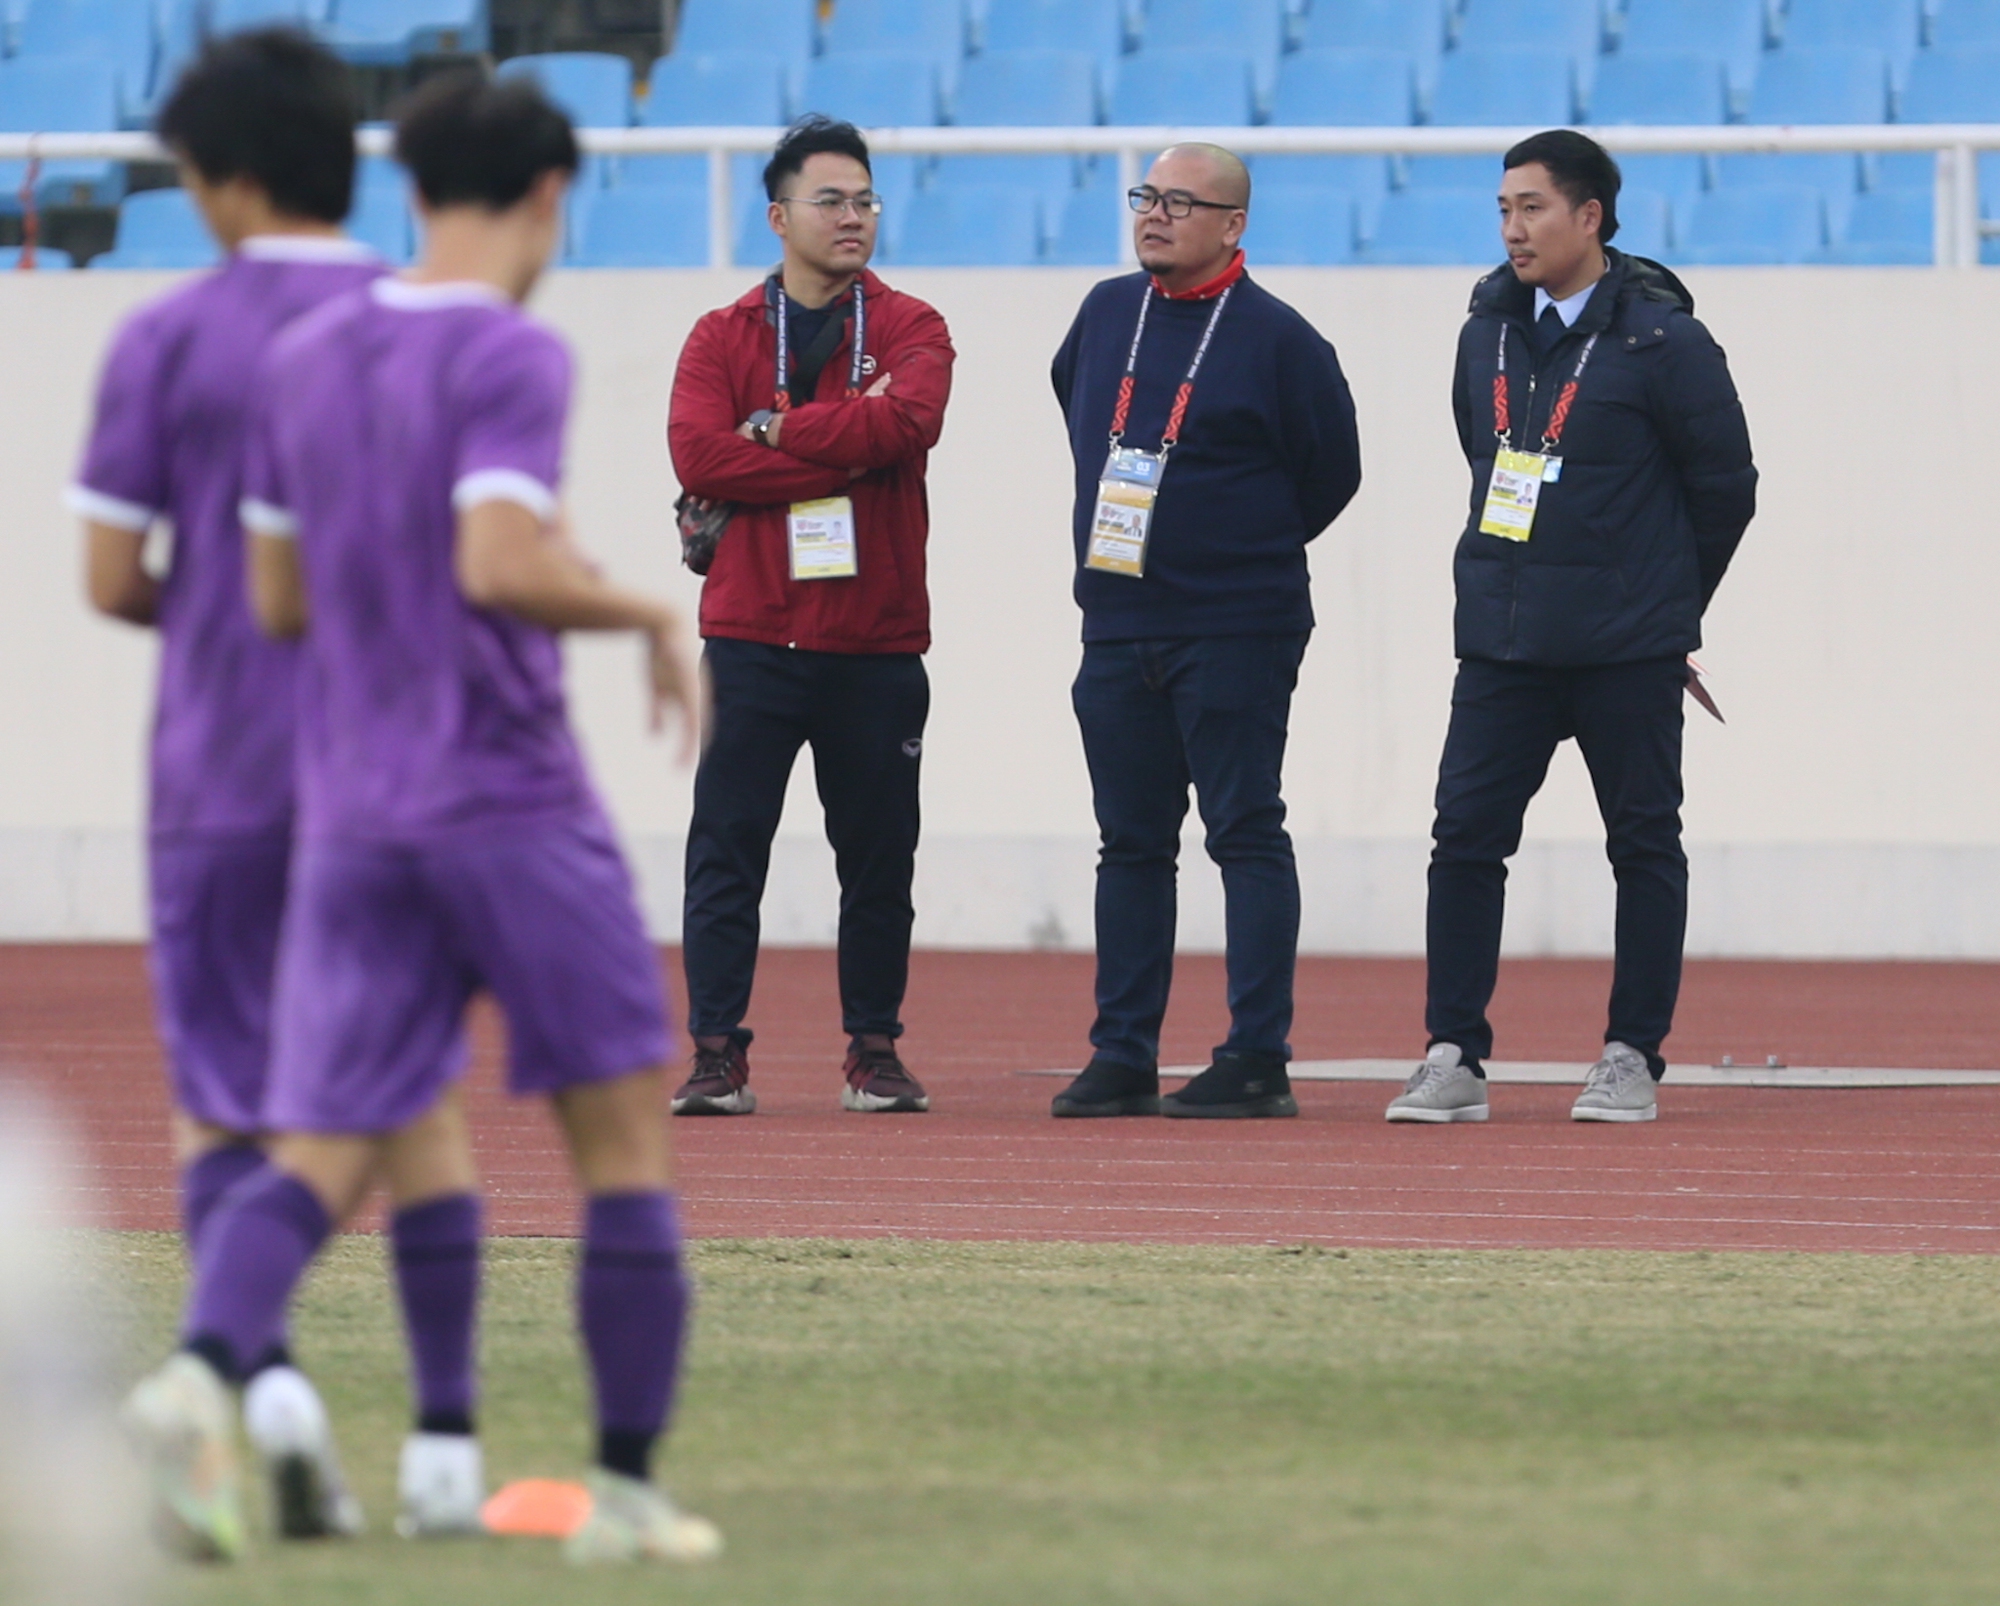 HLV Park Hang-seo kiểm tra sân, đội tuyển Việt Nam đến sớm phải khởi động ngoài đường chạy - Ảnh 7.